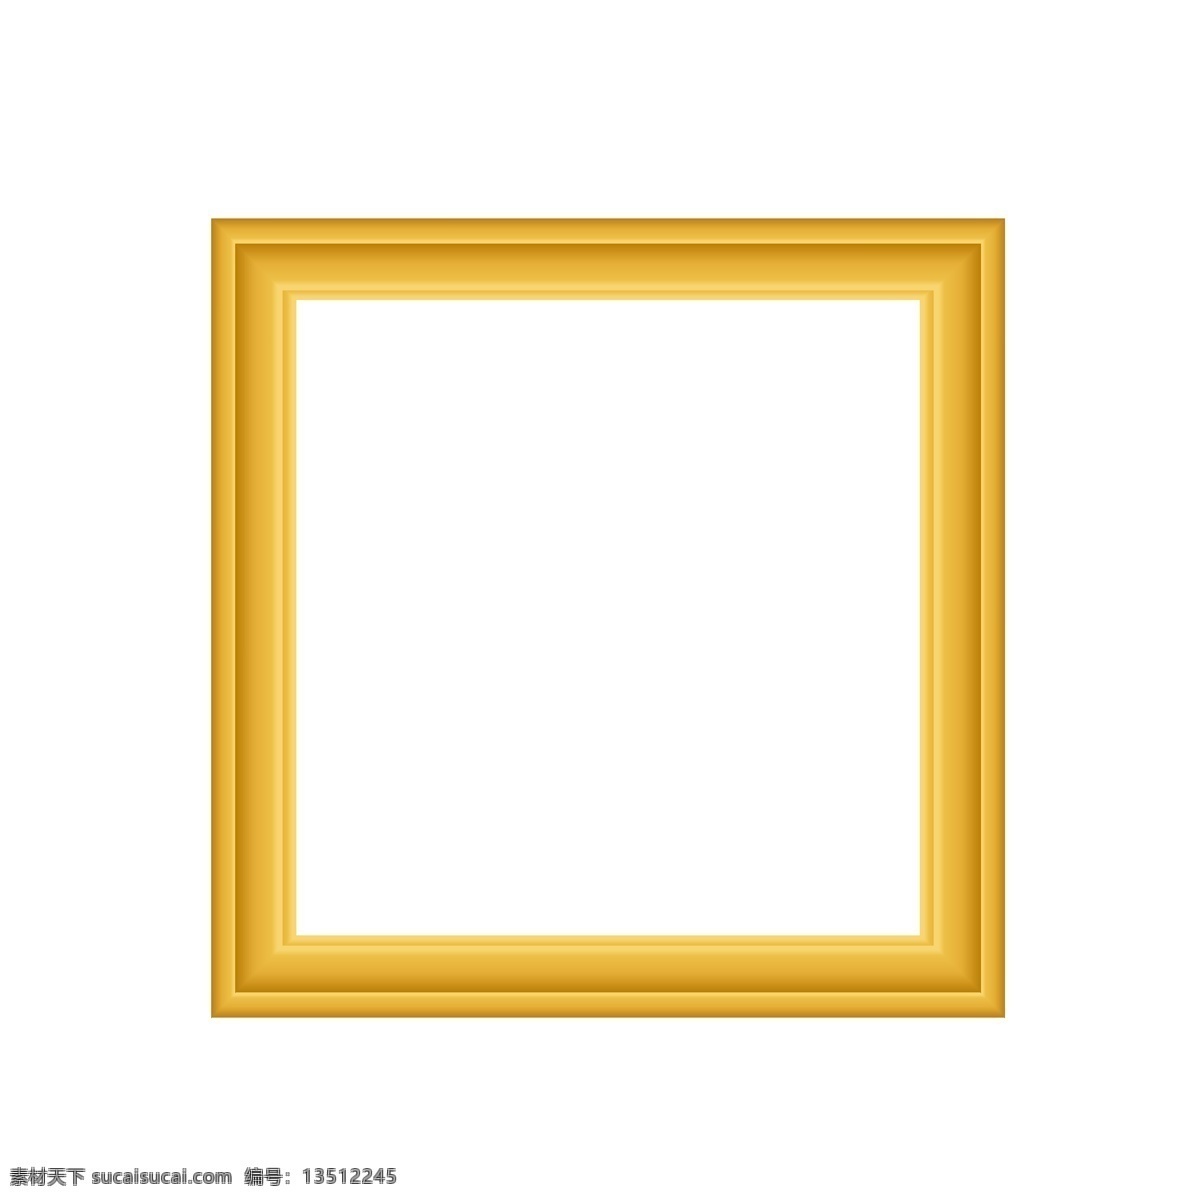 复古 金黄 欧式 华丽 相框 画框 边框 元素 典雅 古典